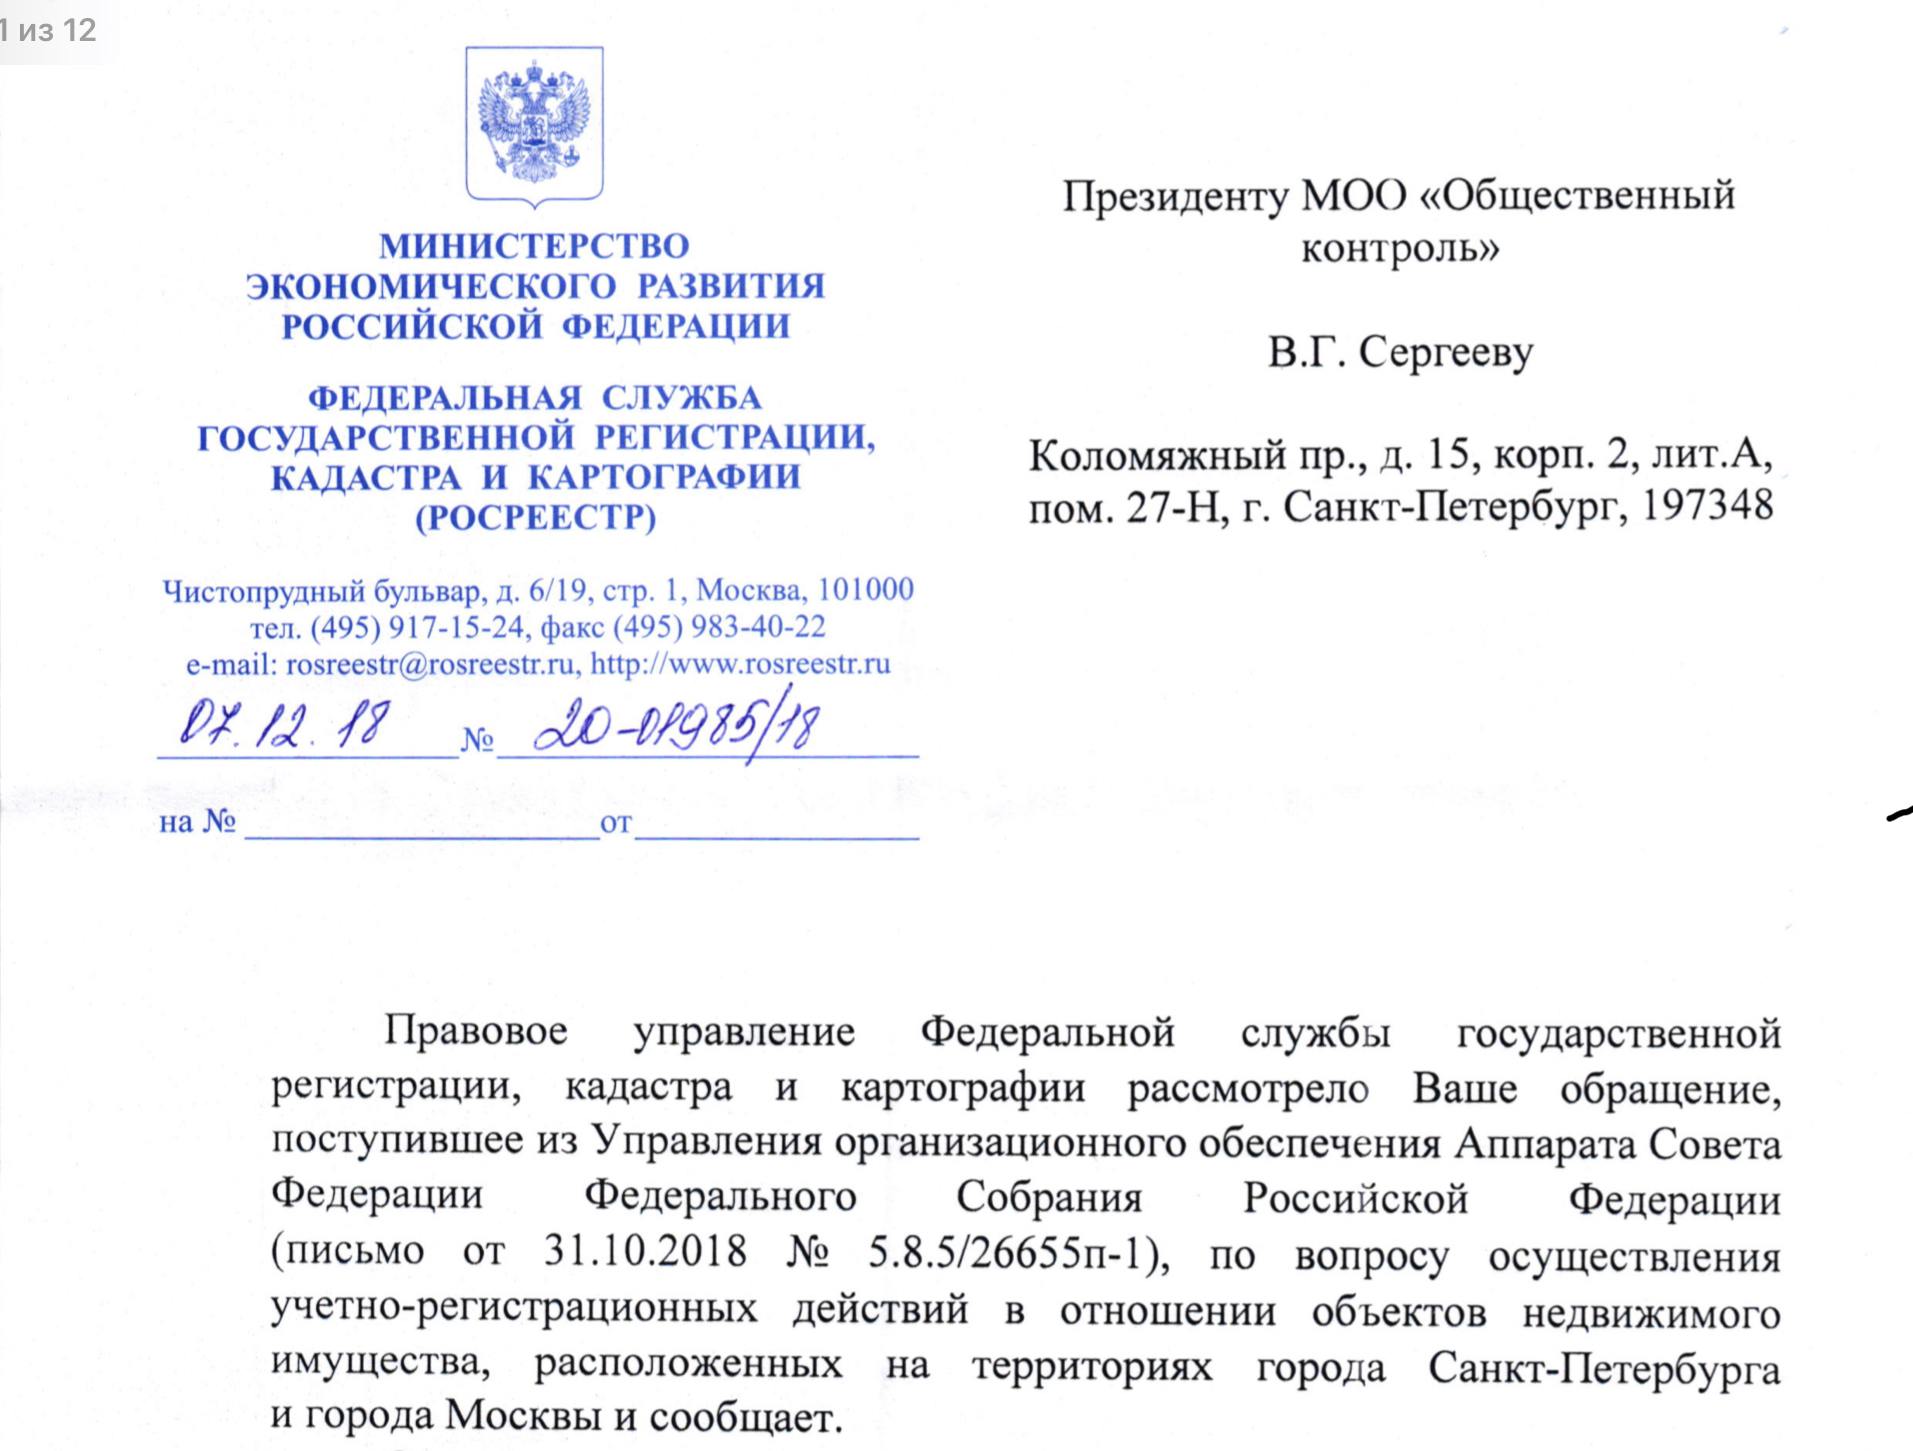 Ответ Росреестра РФ на обращение от 31.10.2018, по вопросу осуществления учетно-регистрационных действий в отношении объектов недвижимого имущества, расположенных на территориях города Санкт-Петербург и города Москва.